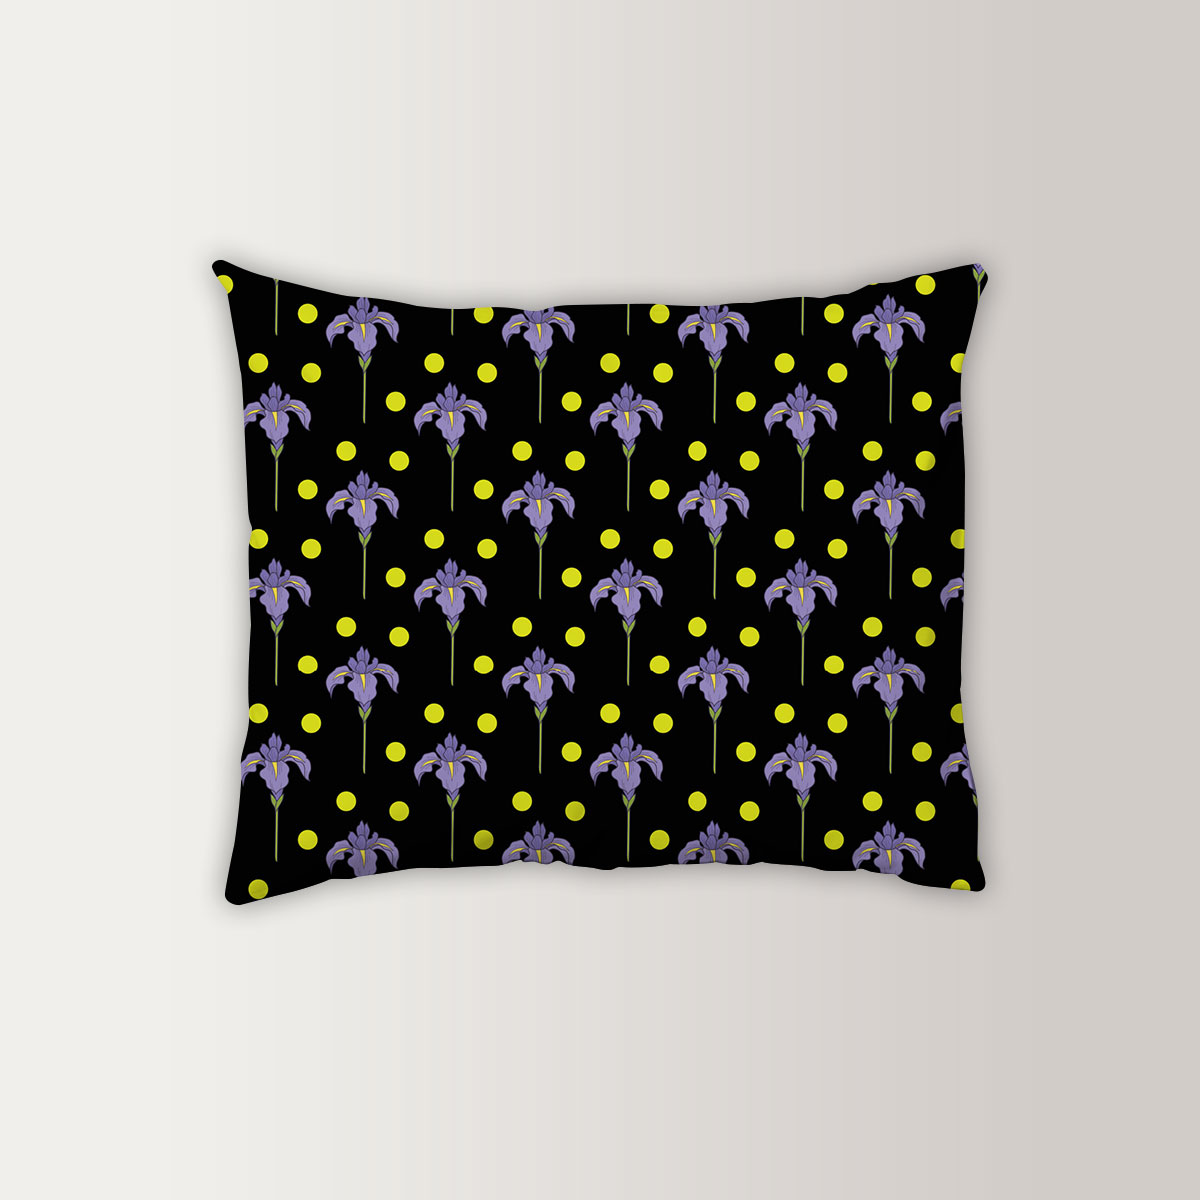 Iris Flower And Dot Seamless Pattern Pillow Case